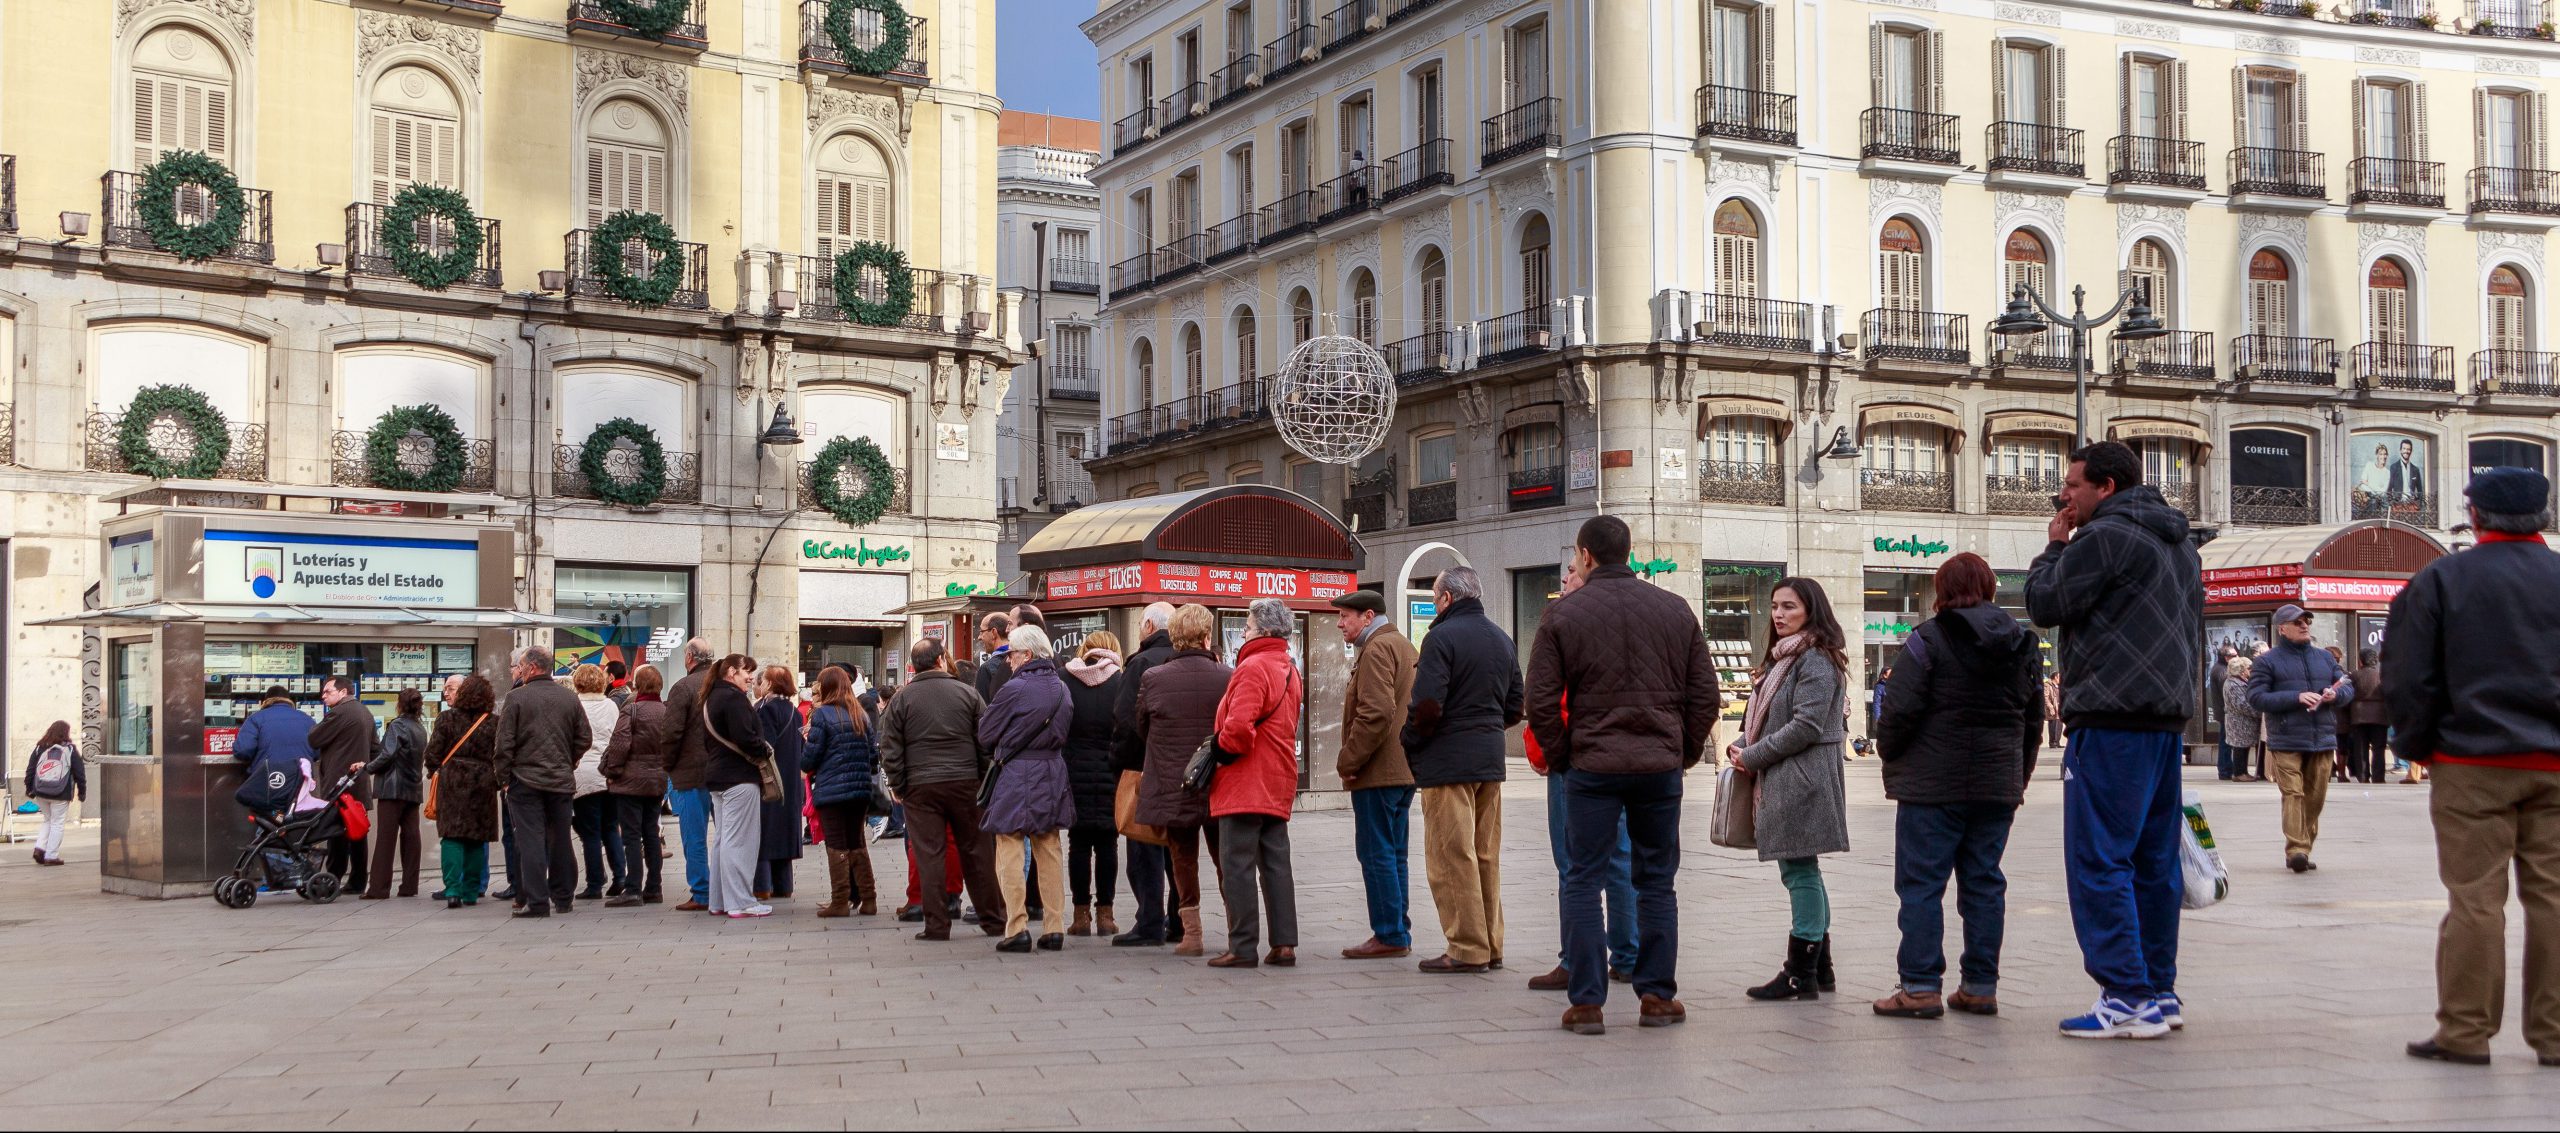 Puerta del Sol in Madrid|Sort|Colegio San Ildefonso Madrid